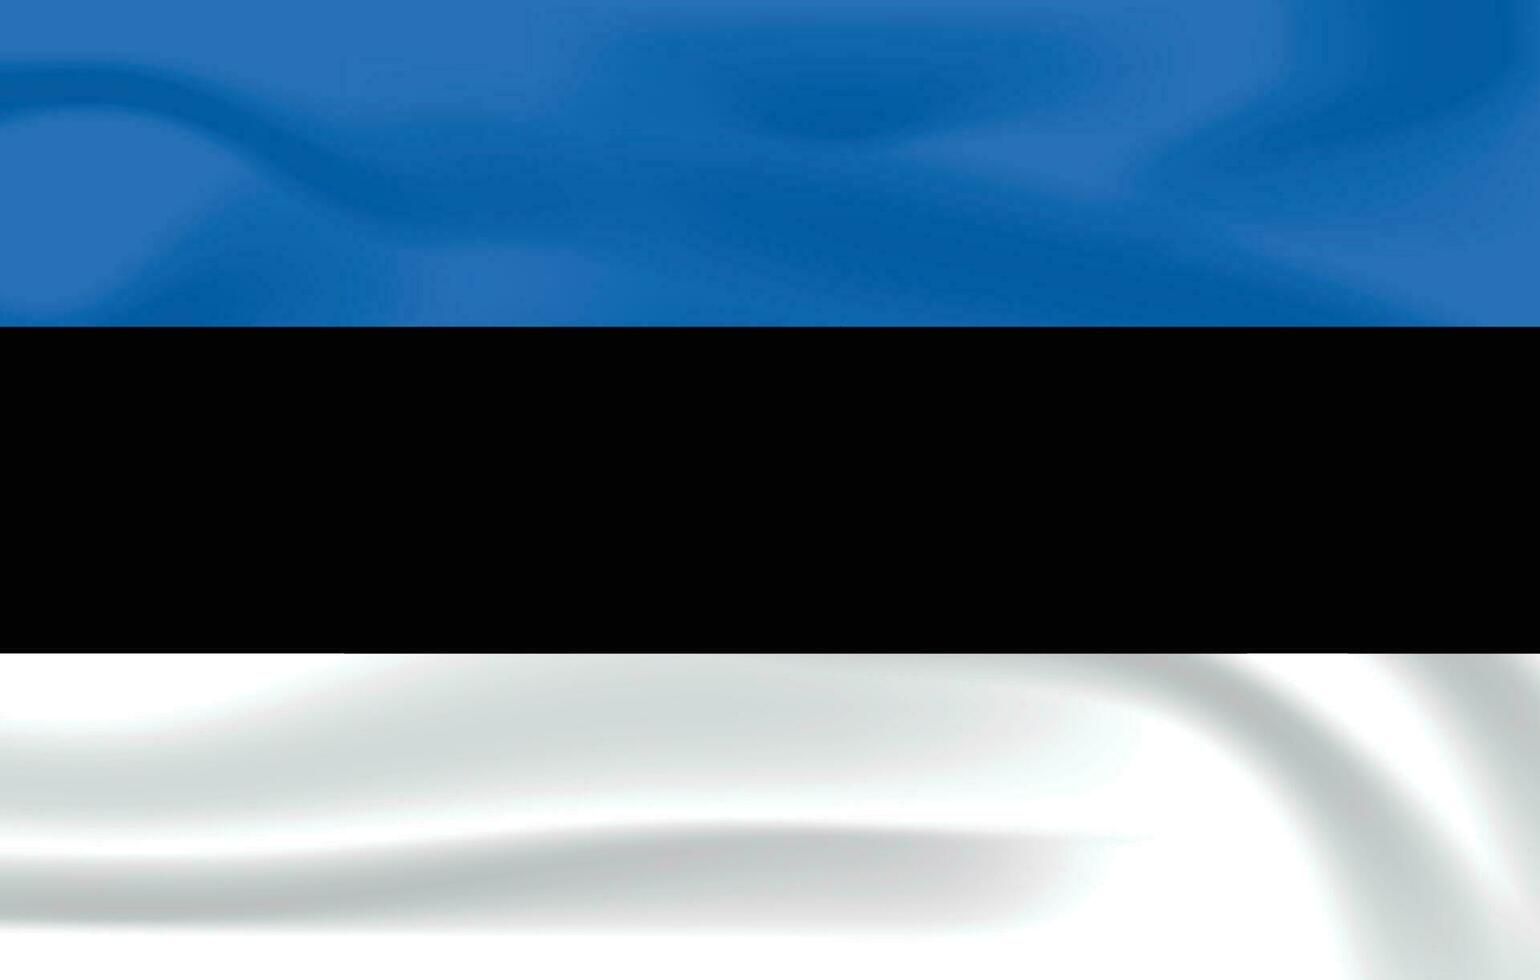 realista Estonia bandera nacional bandera de Estonia vector